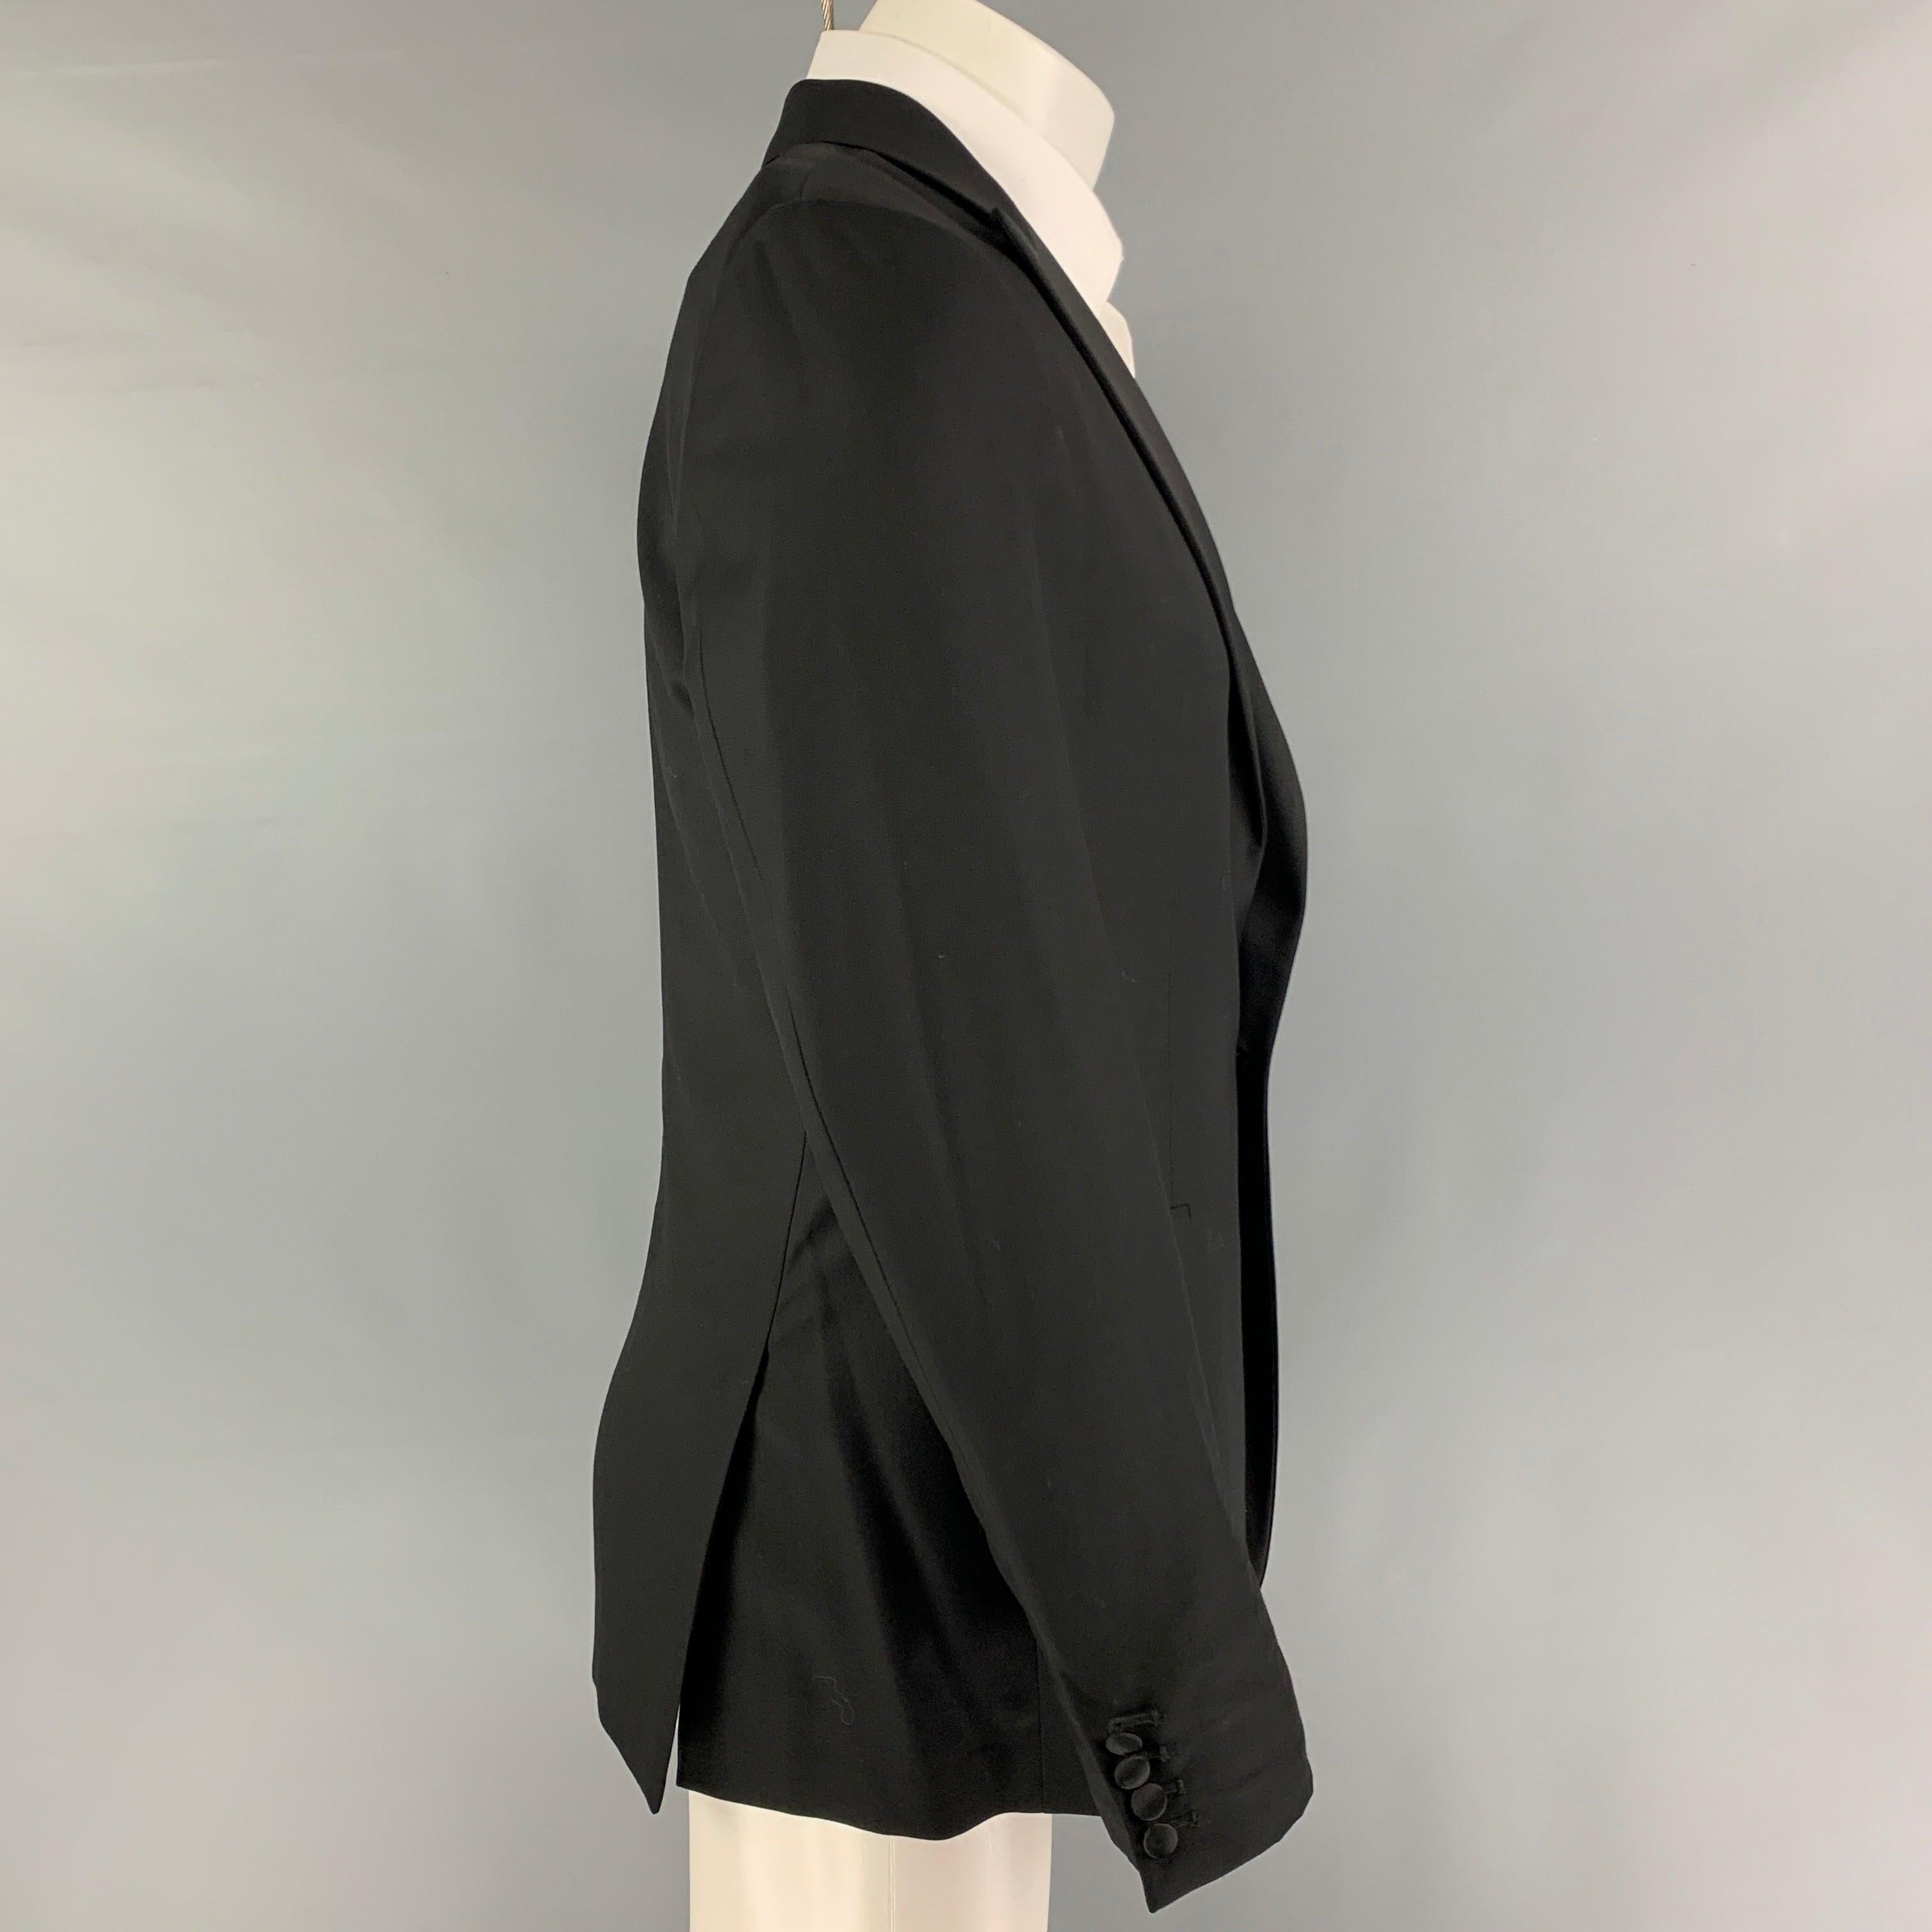 Le manteau de sport CALVIN KLEIN COLLECTION est en laine noire avec une doublure complète, un revers en pointe, des poches à rabat, une double fente au dos et une fermeture à un seul bouton.
Très bien
Etat d'occasion. 

Marqué :   48/38 

Mesures :